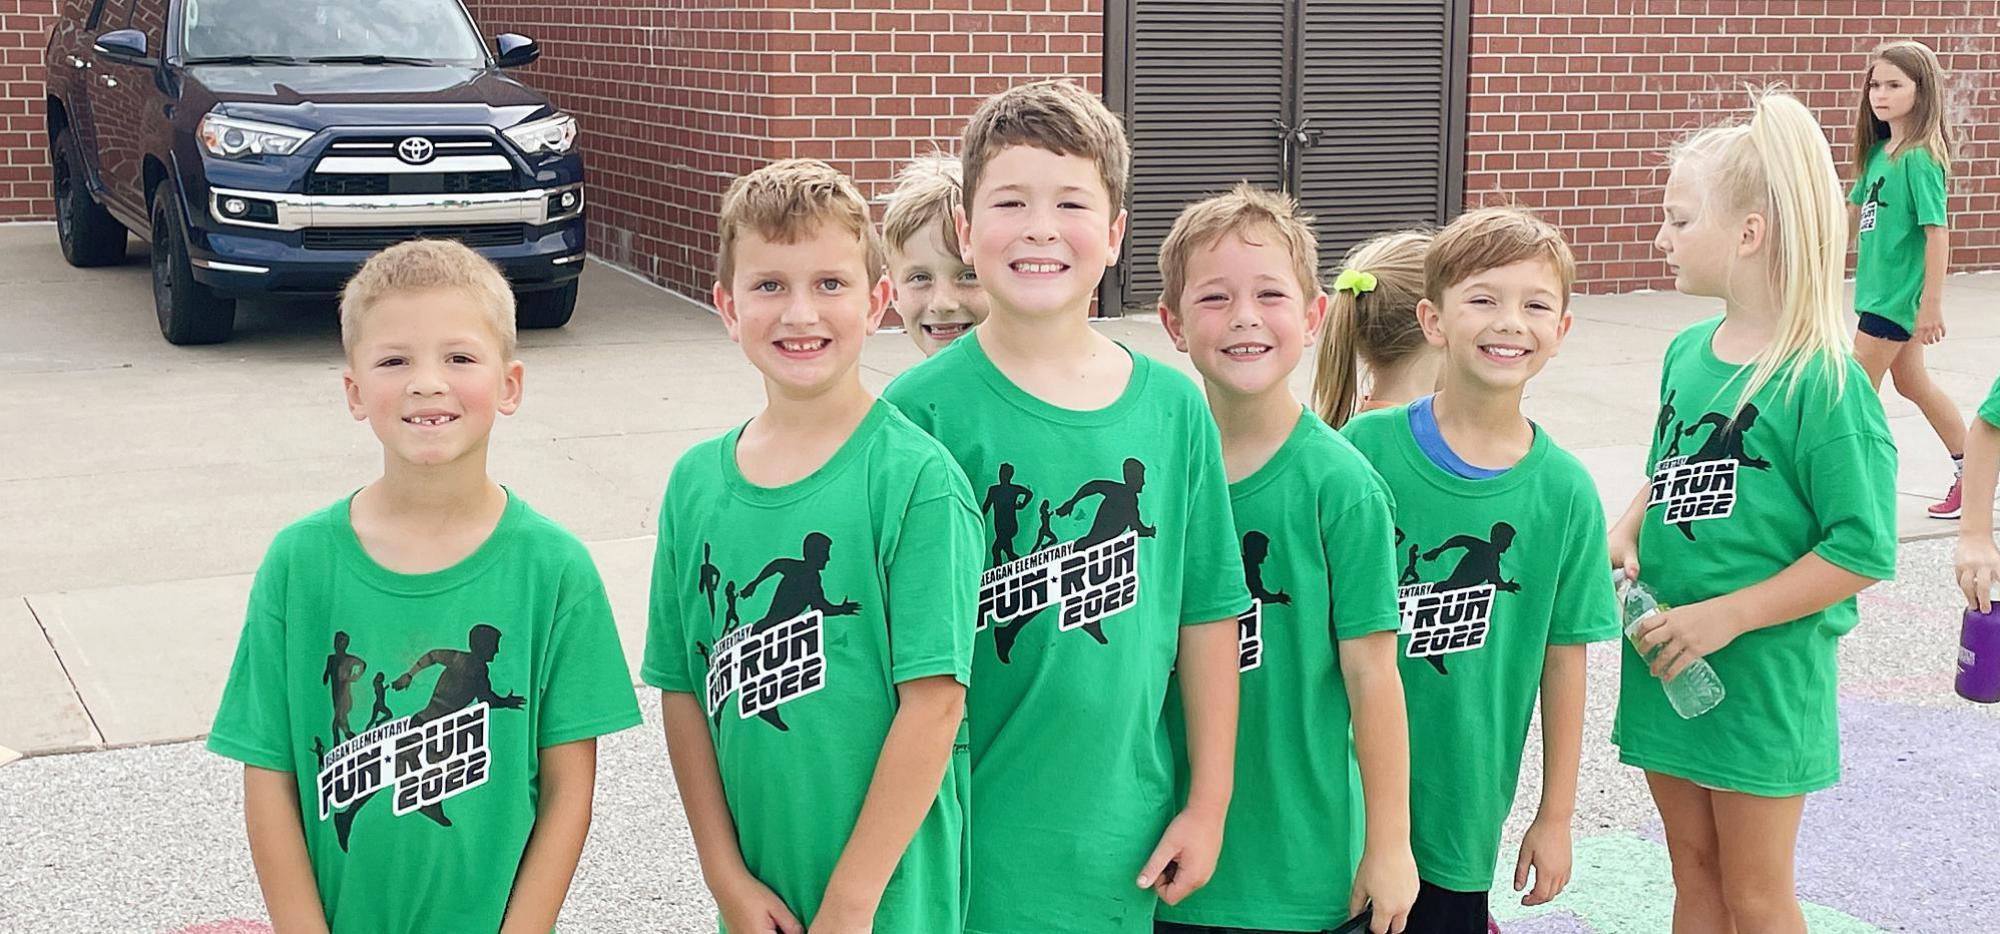 2nd Grade - Fun Run